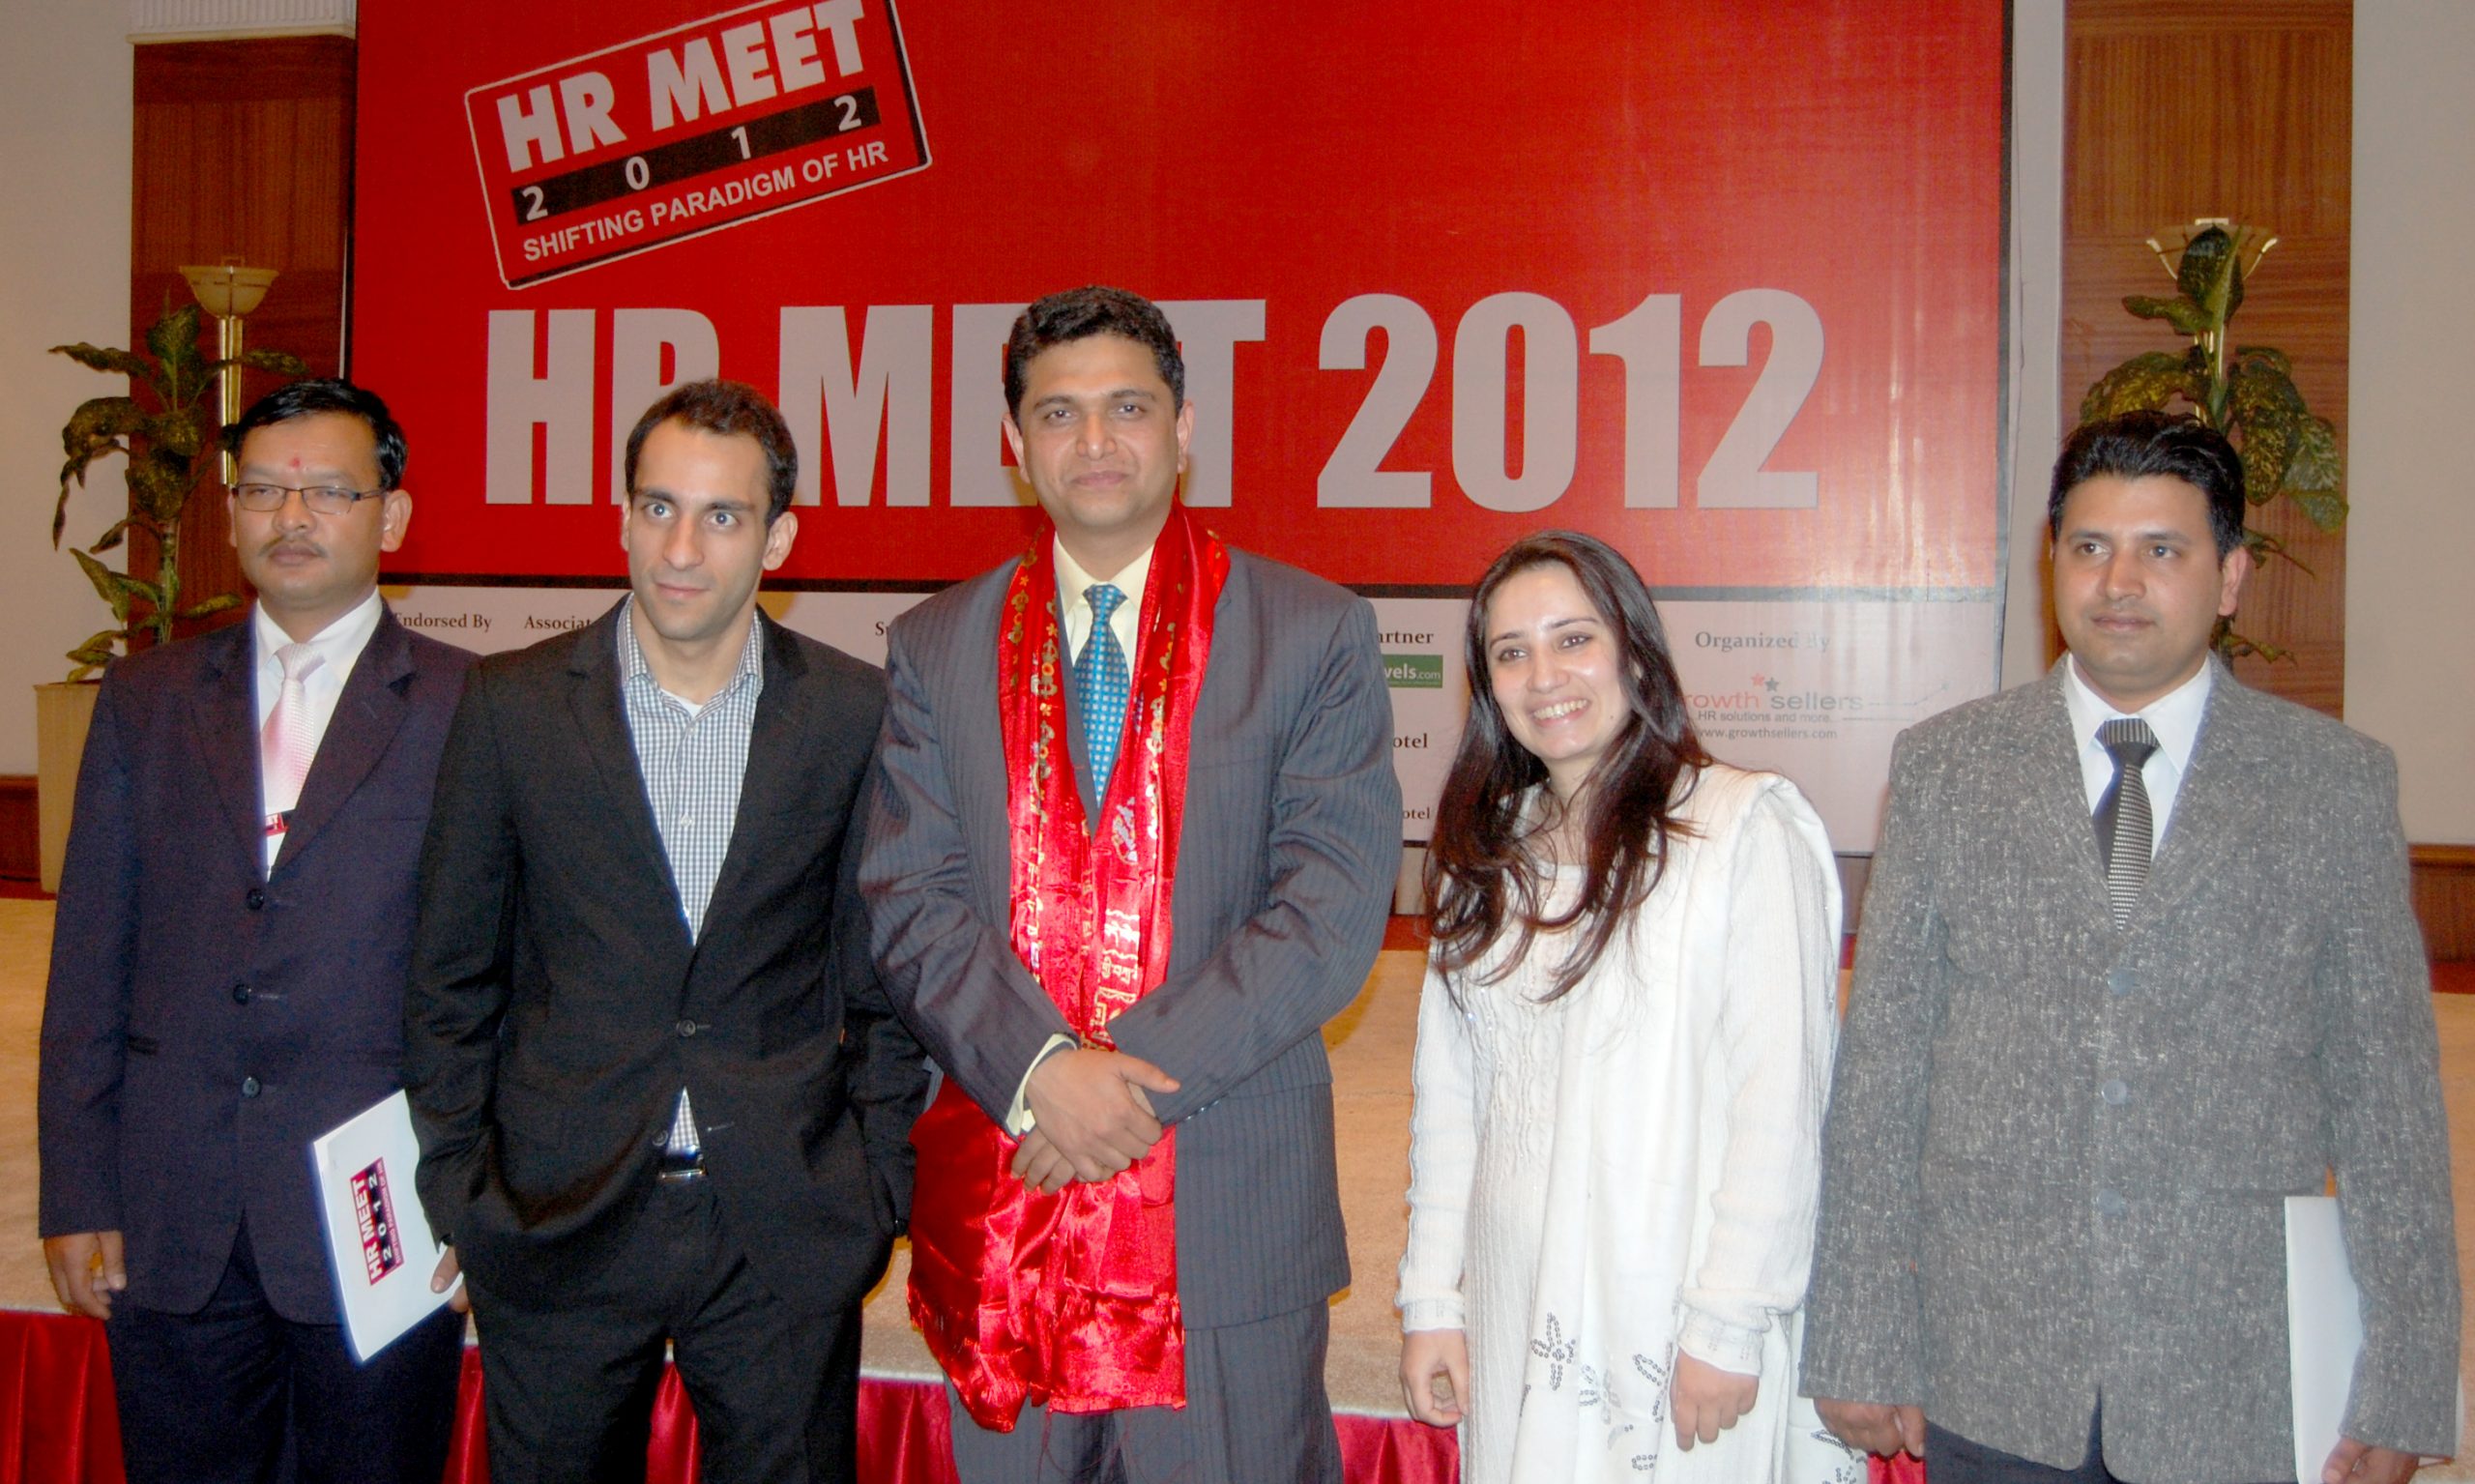 HR MEET 2012